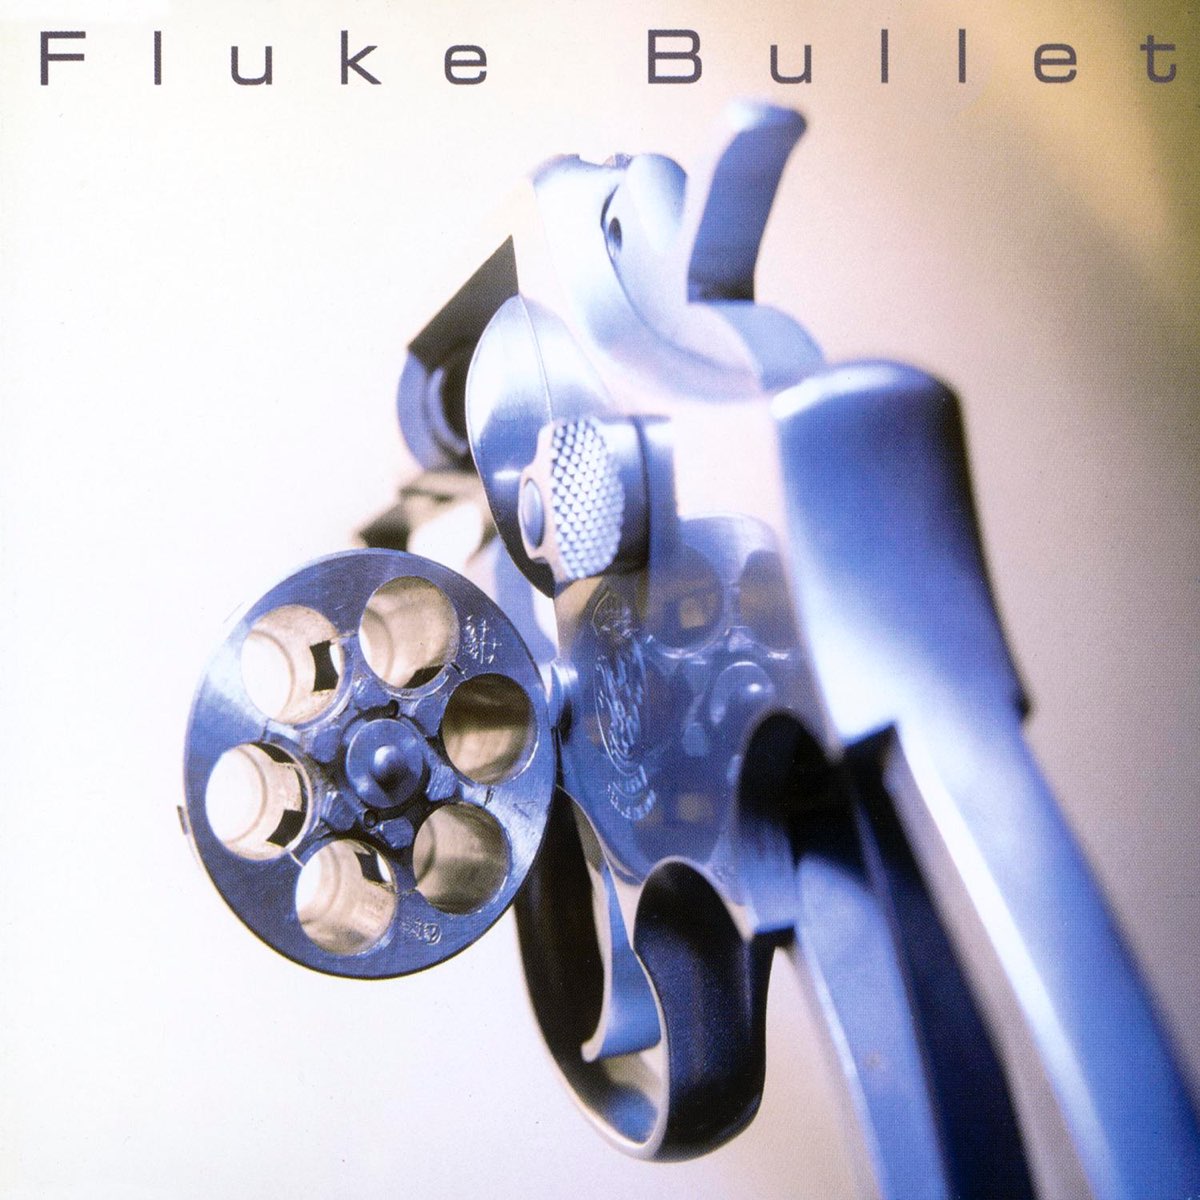 Fluke bullet